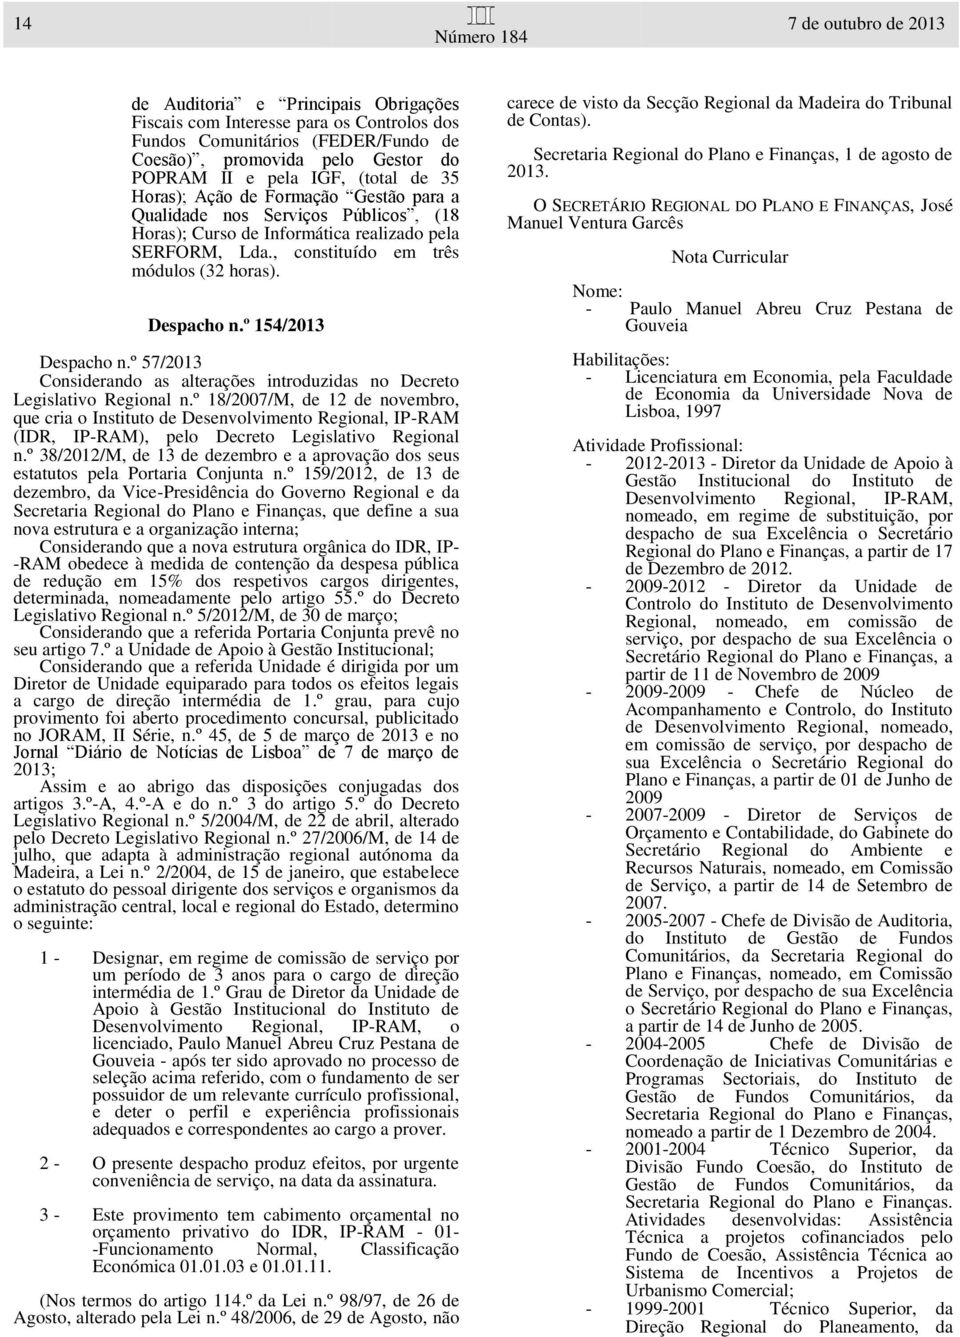 º 154/2013 Despacho n.º 57/2013 Considerando as alterações introduzidas no Decreto Legislativo Regional n.